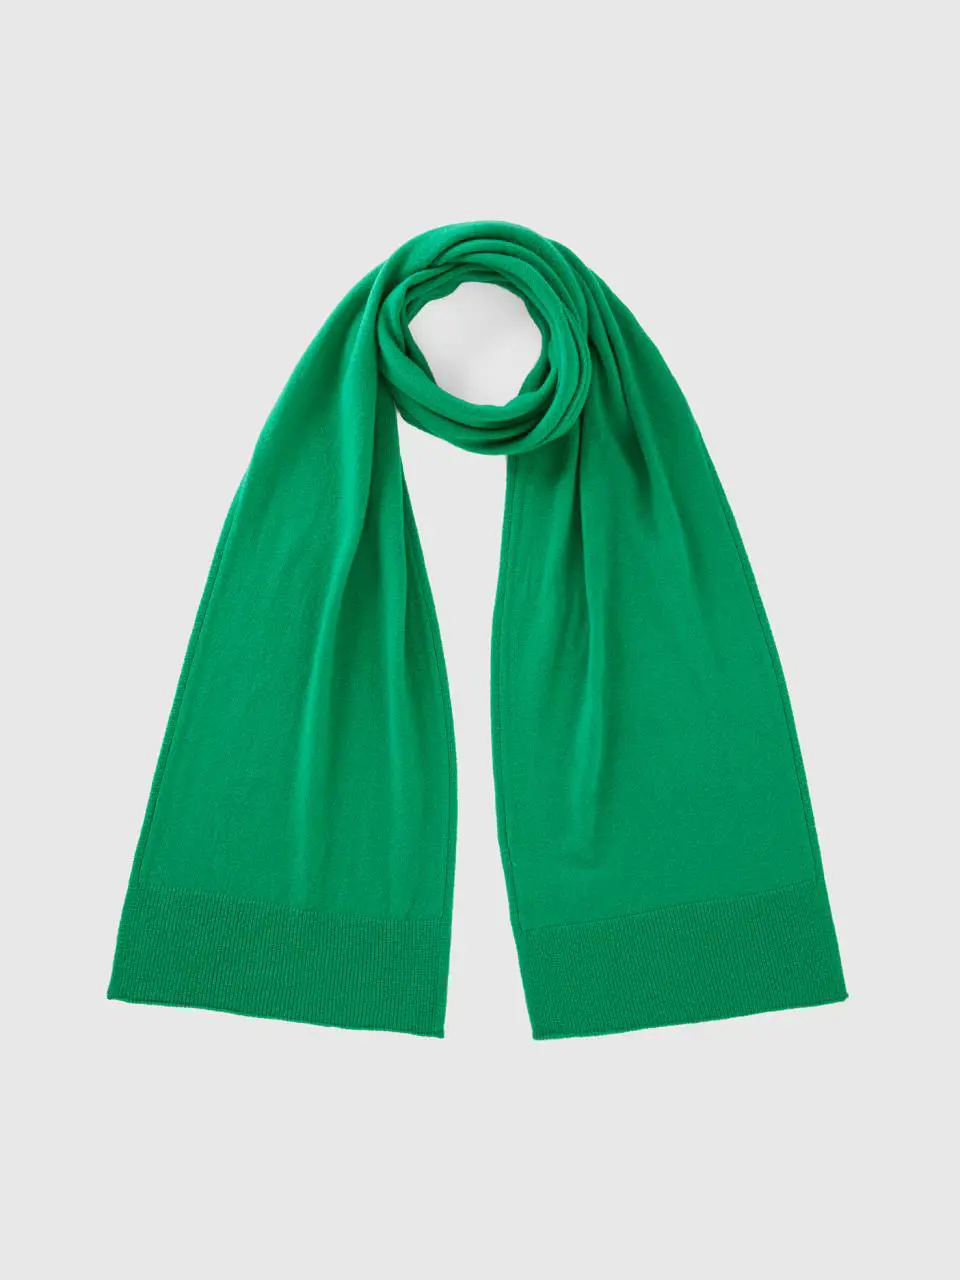 Benetton green scarf in pure merino wool. 1